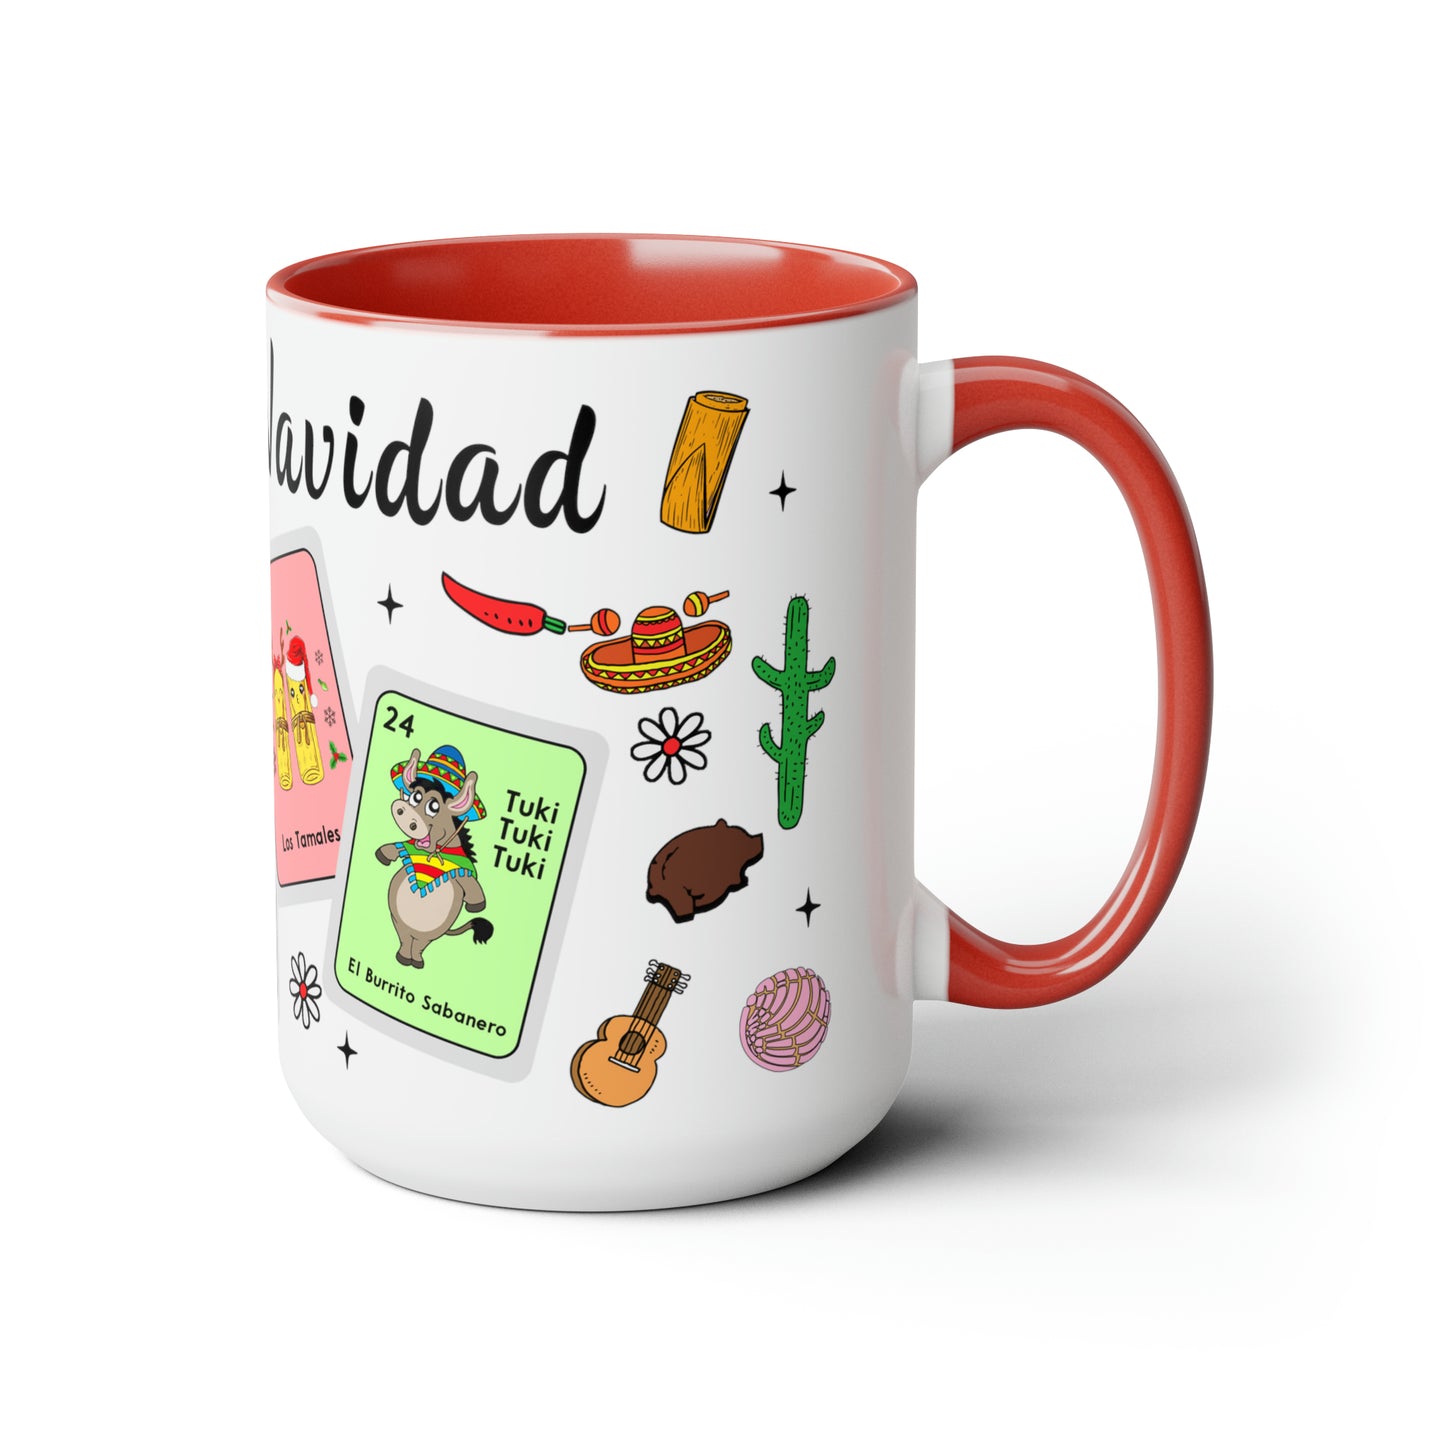 Feliz navidad Coffee Mugs, 15oz for Mexican family or Latin friend. Mexica cup for him or her. El burrito sabanero, los tamales, el Santa.